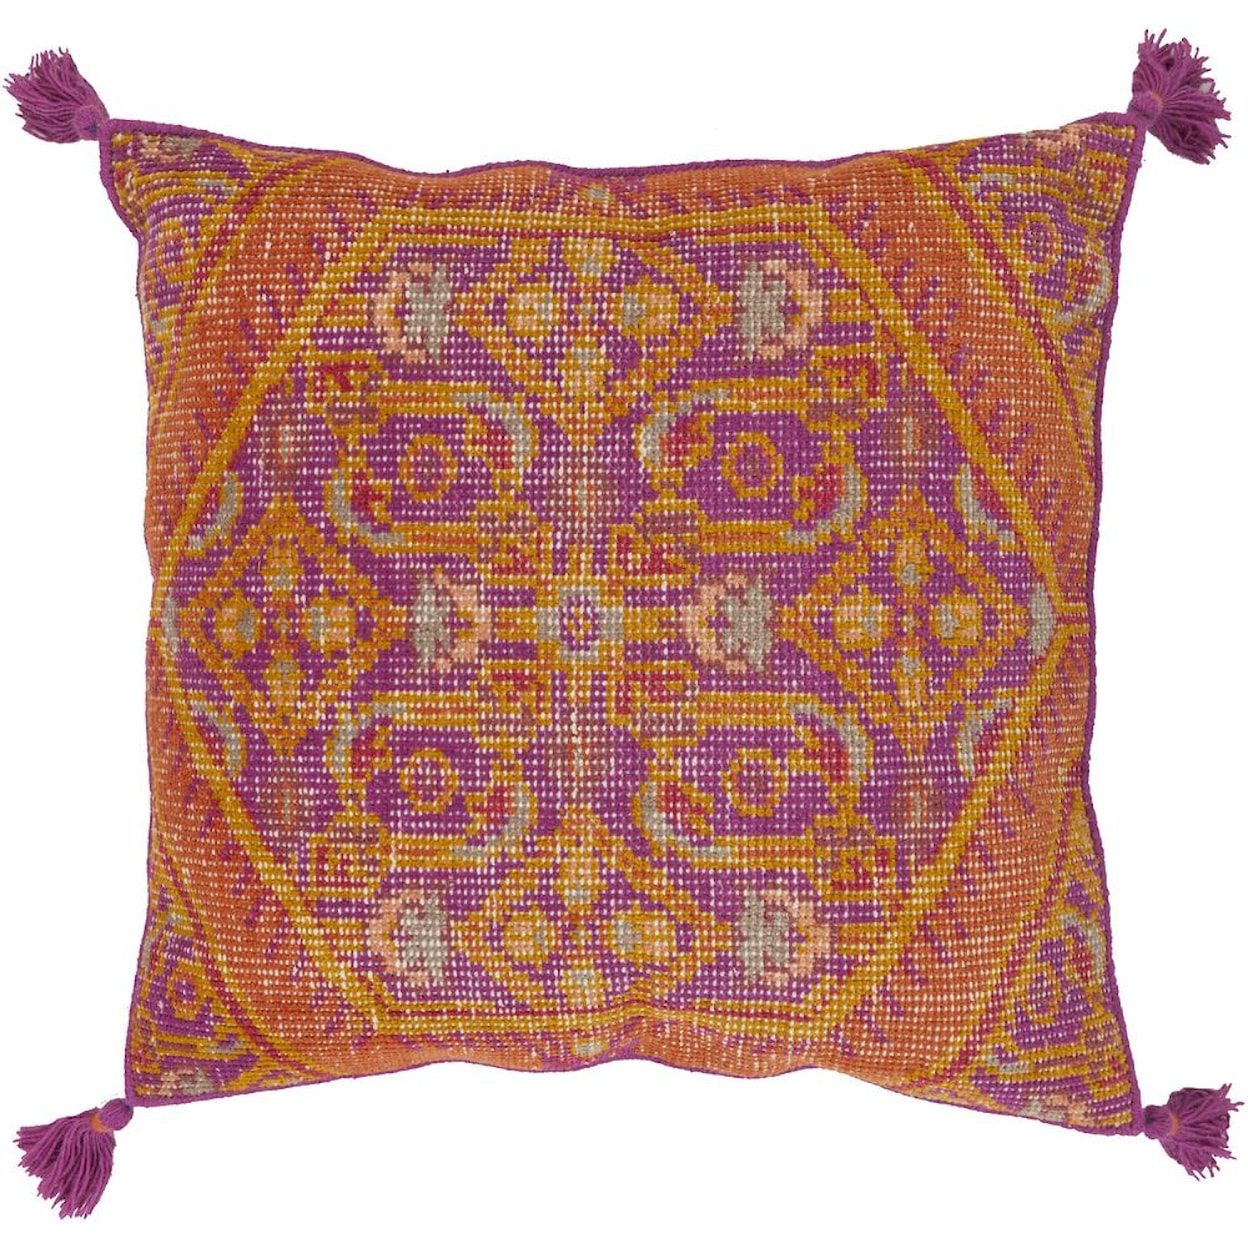 Surya Pillows 30" x 30" Decorative Pillow